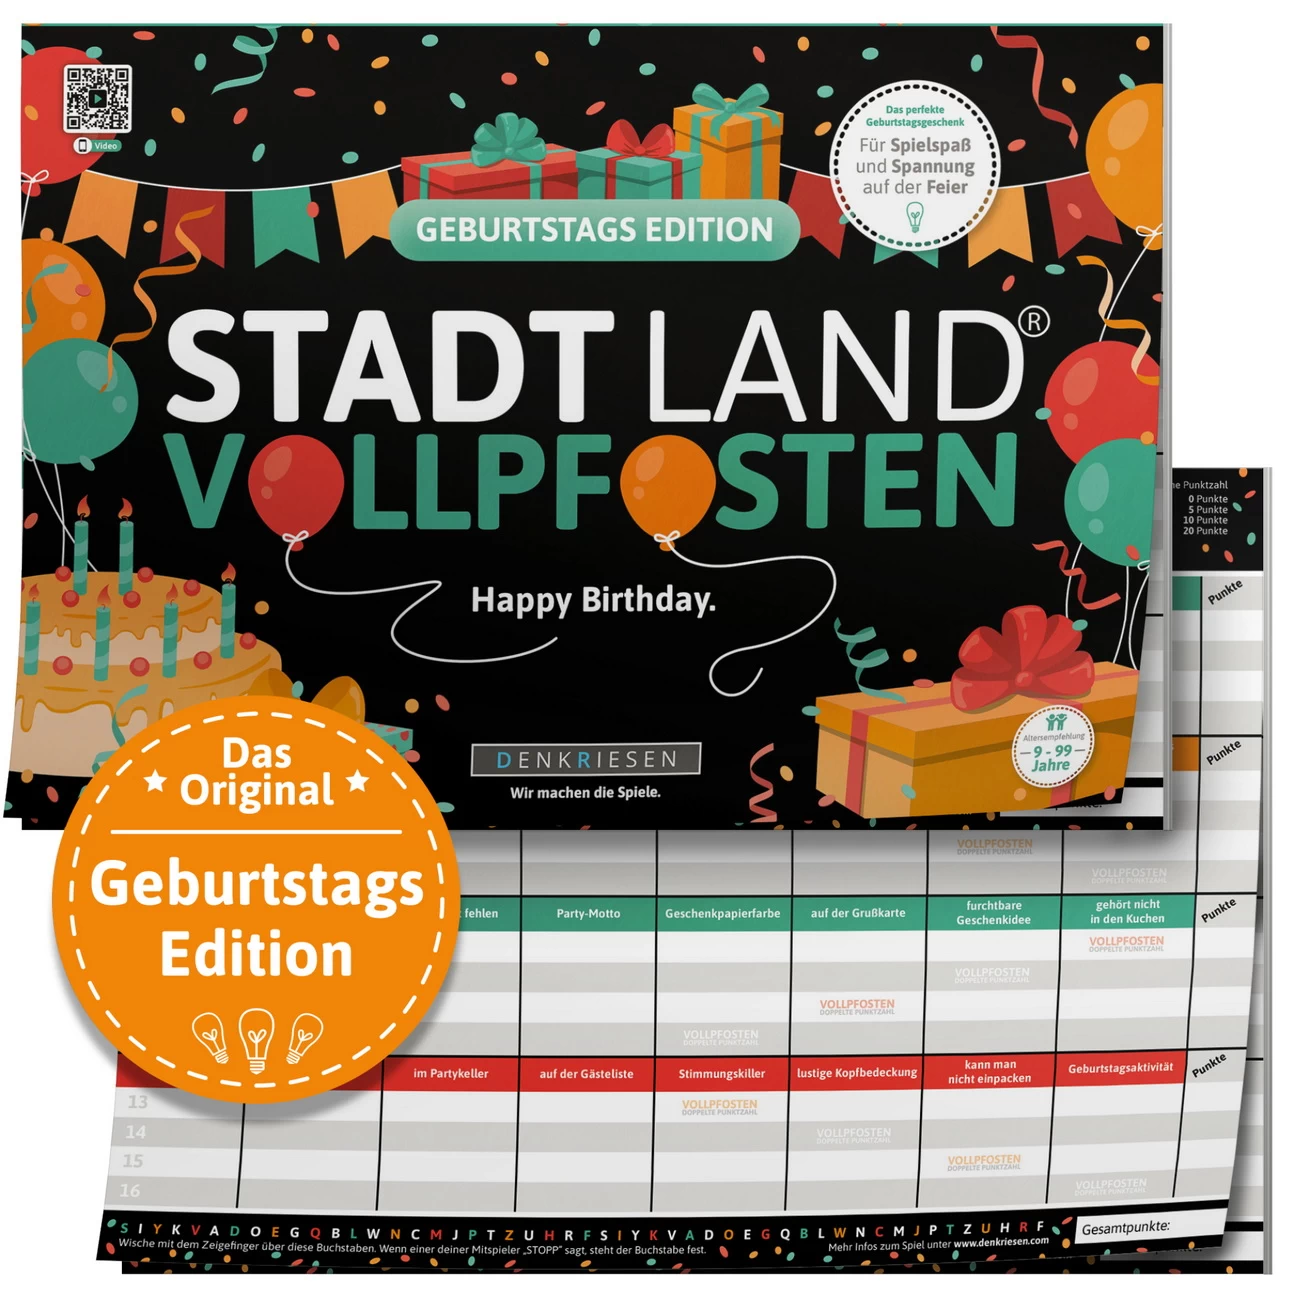 Geburtstag Edition - STADT LAND VOLLPFOSTEN (DENKRIESEN)